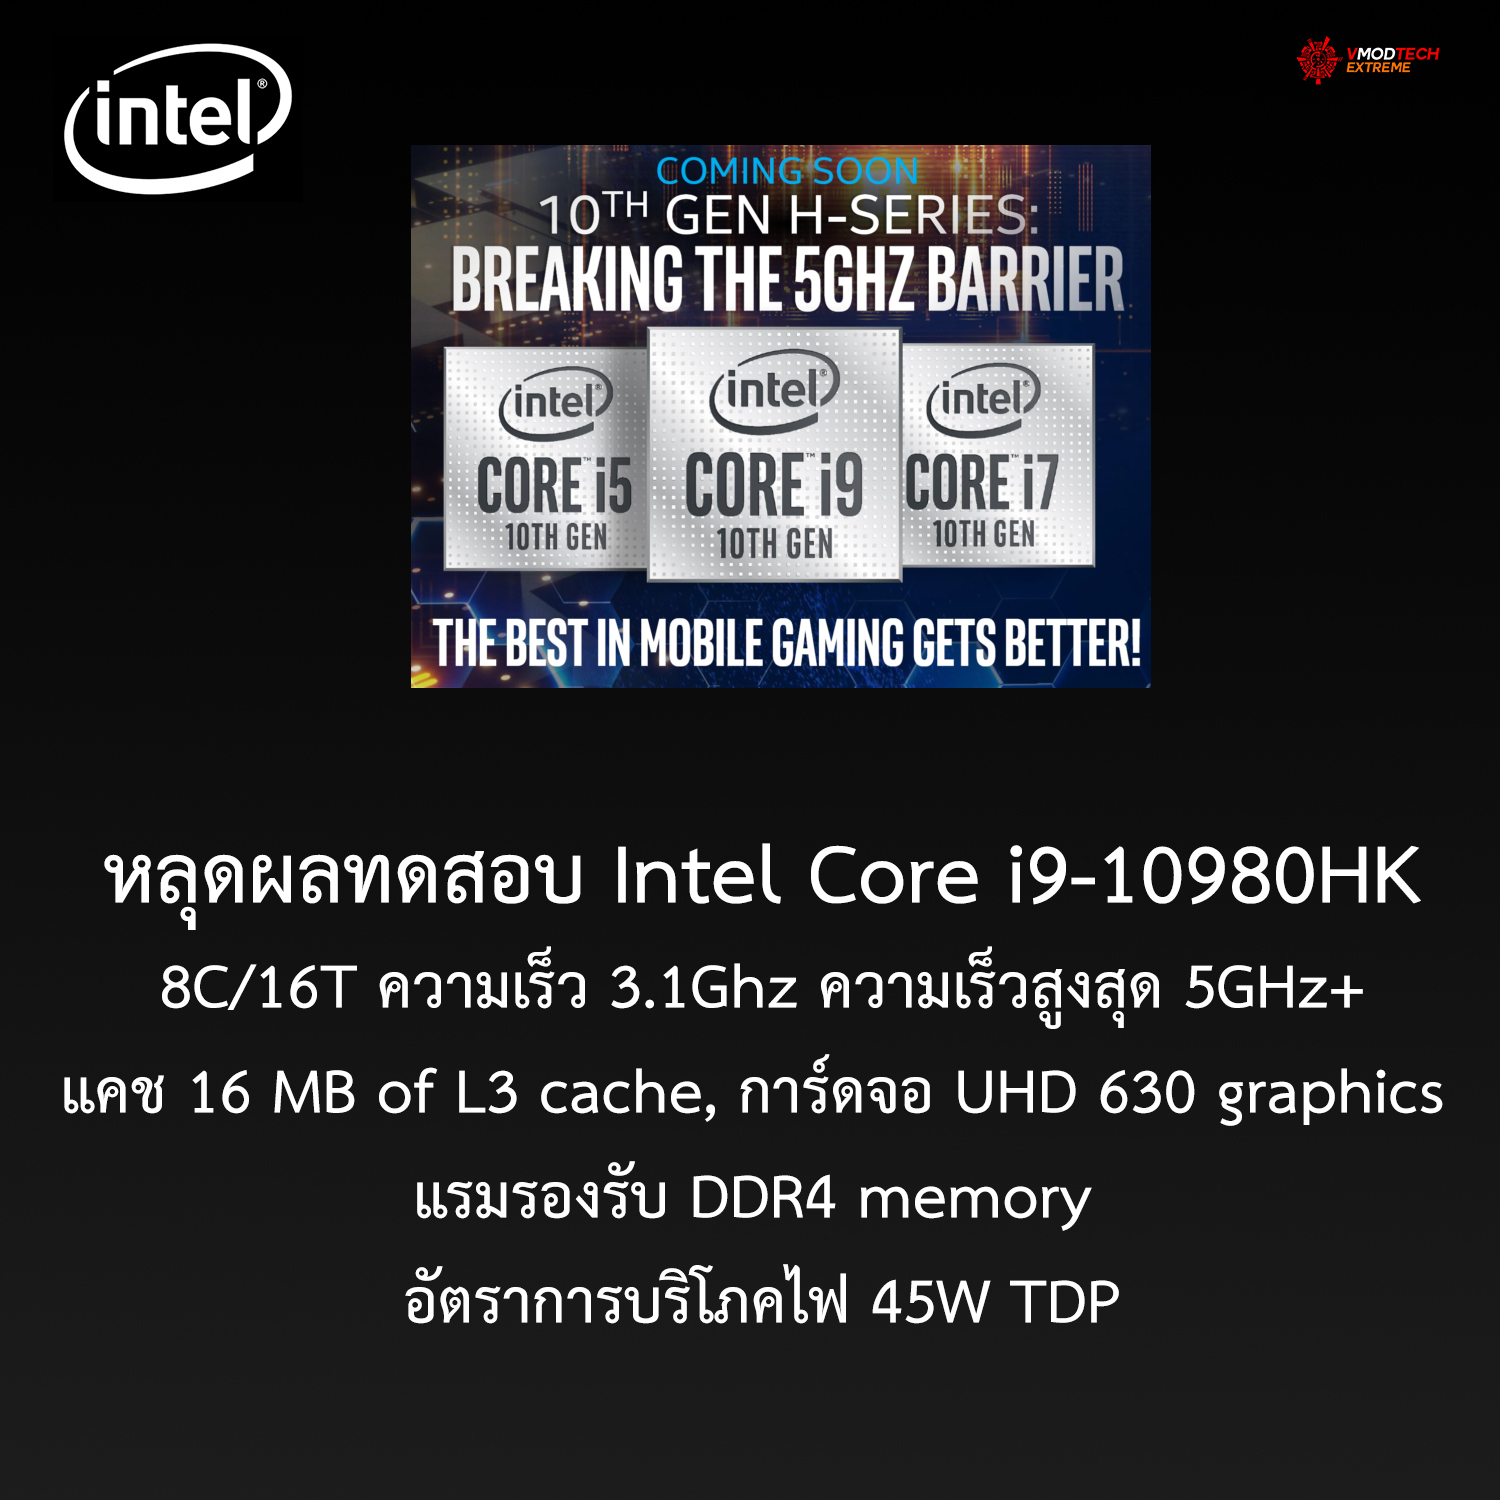 หลุดผลทดสอบ Intel Core i9-10980HK 8C/16T ความเร็ว 5GHz+ กันเลยทีเดียว 